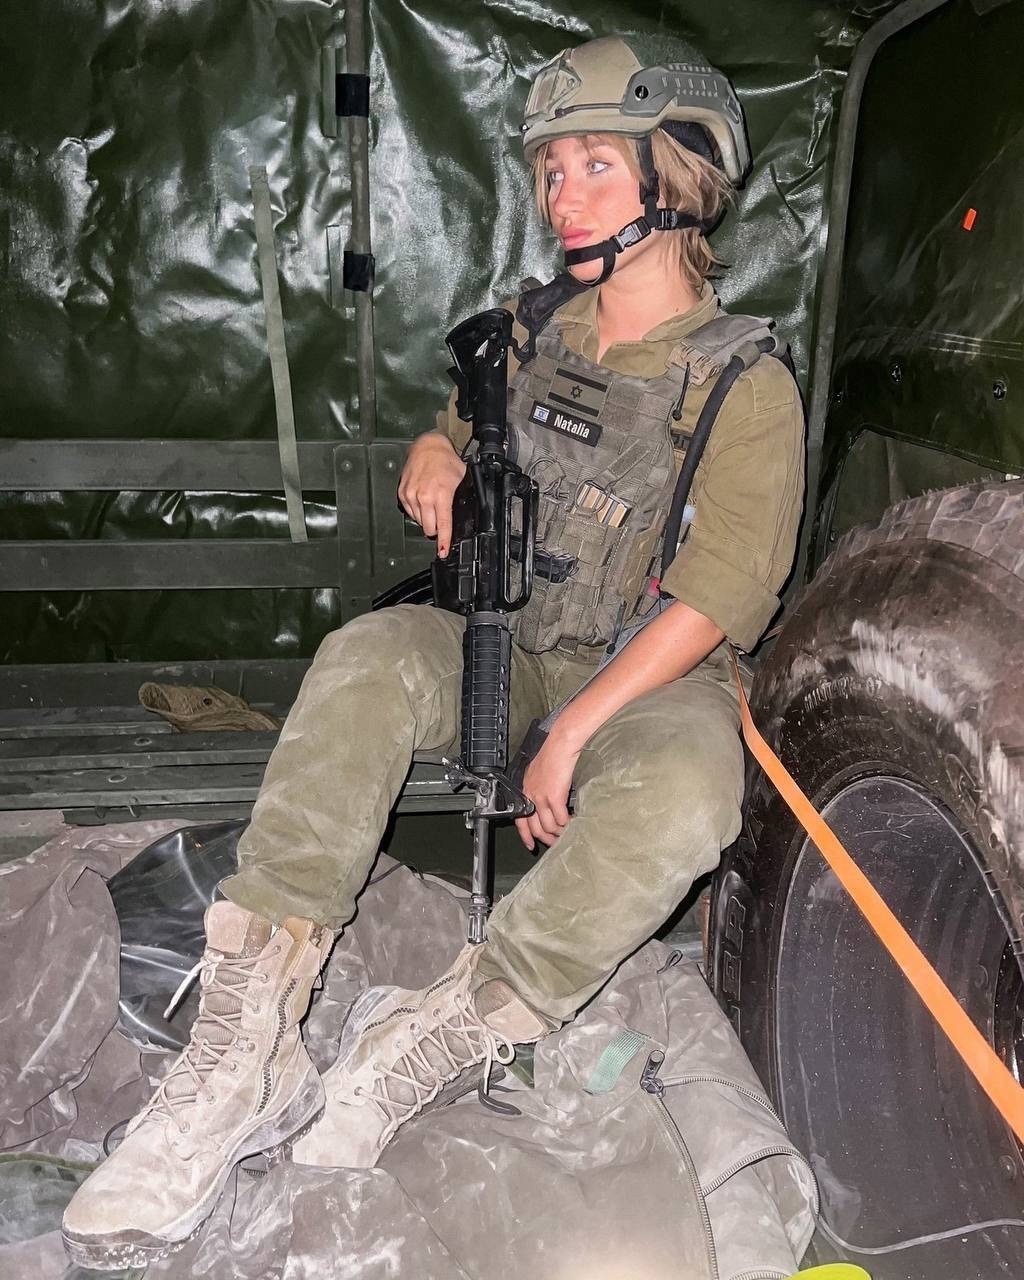 Модель OnlyFans по имени Наталья Фадеева записалась в израильскую армию и пошла на войну. Топ фото Натальи Фадеевой до того, как она надела военную форму, а позировала в костюме зайчика Playboy